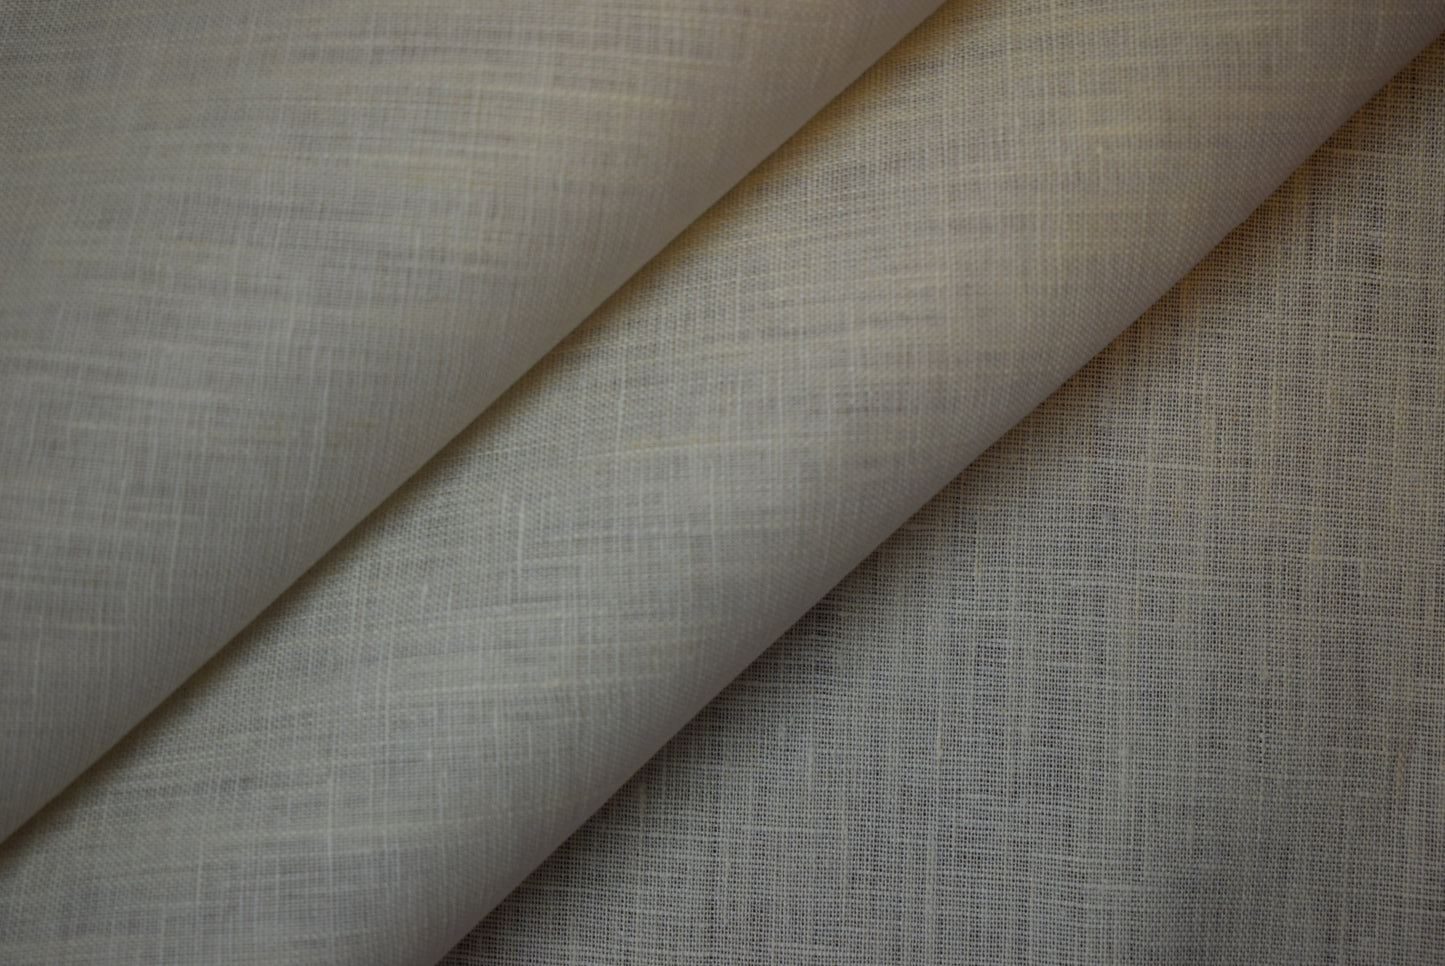 Natural Linen